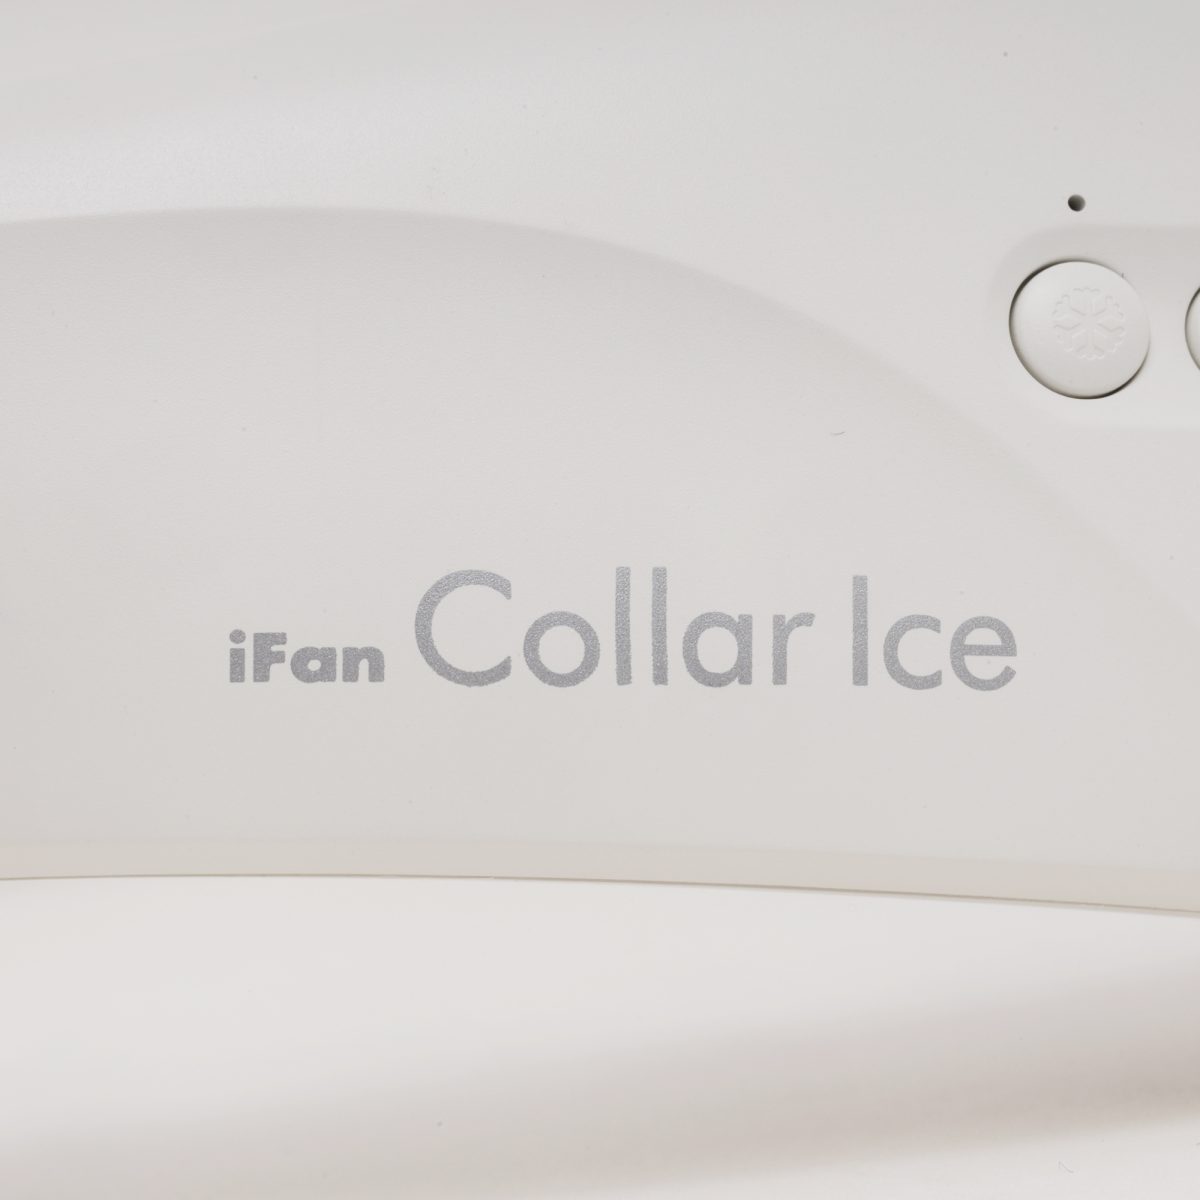 iFan Collar Ice アイファン カラーアイス